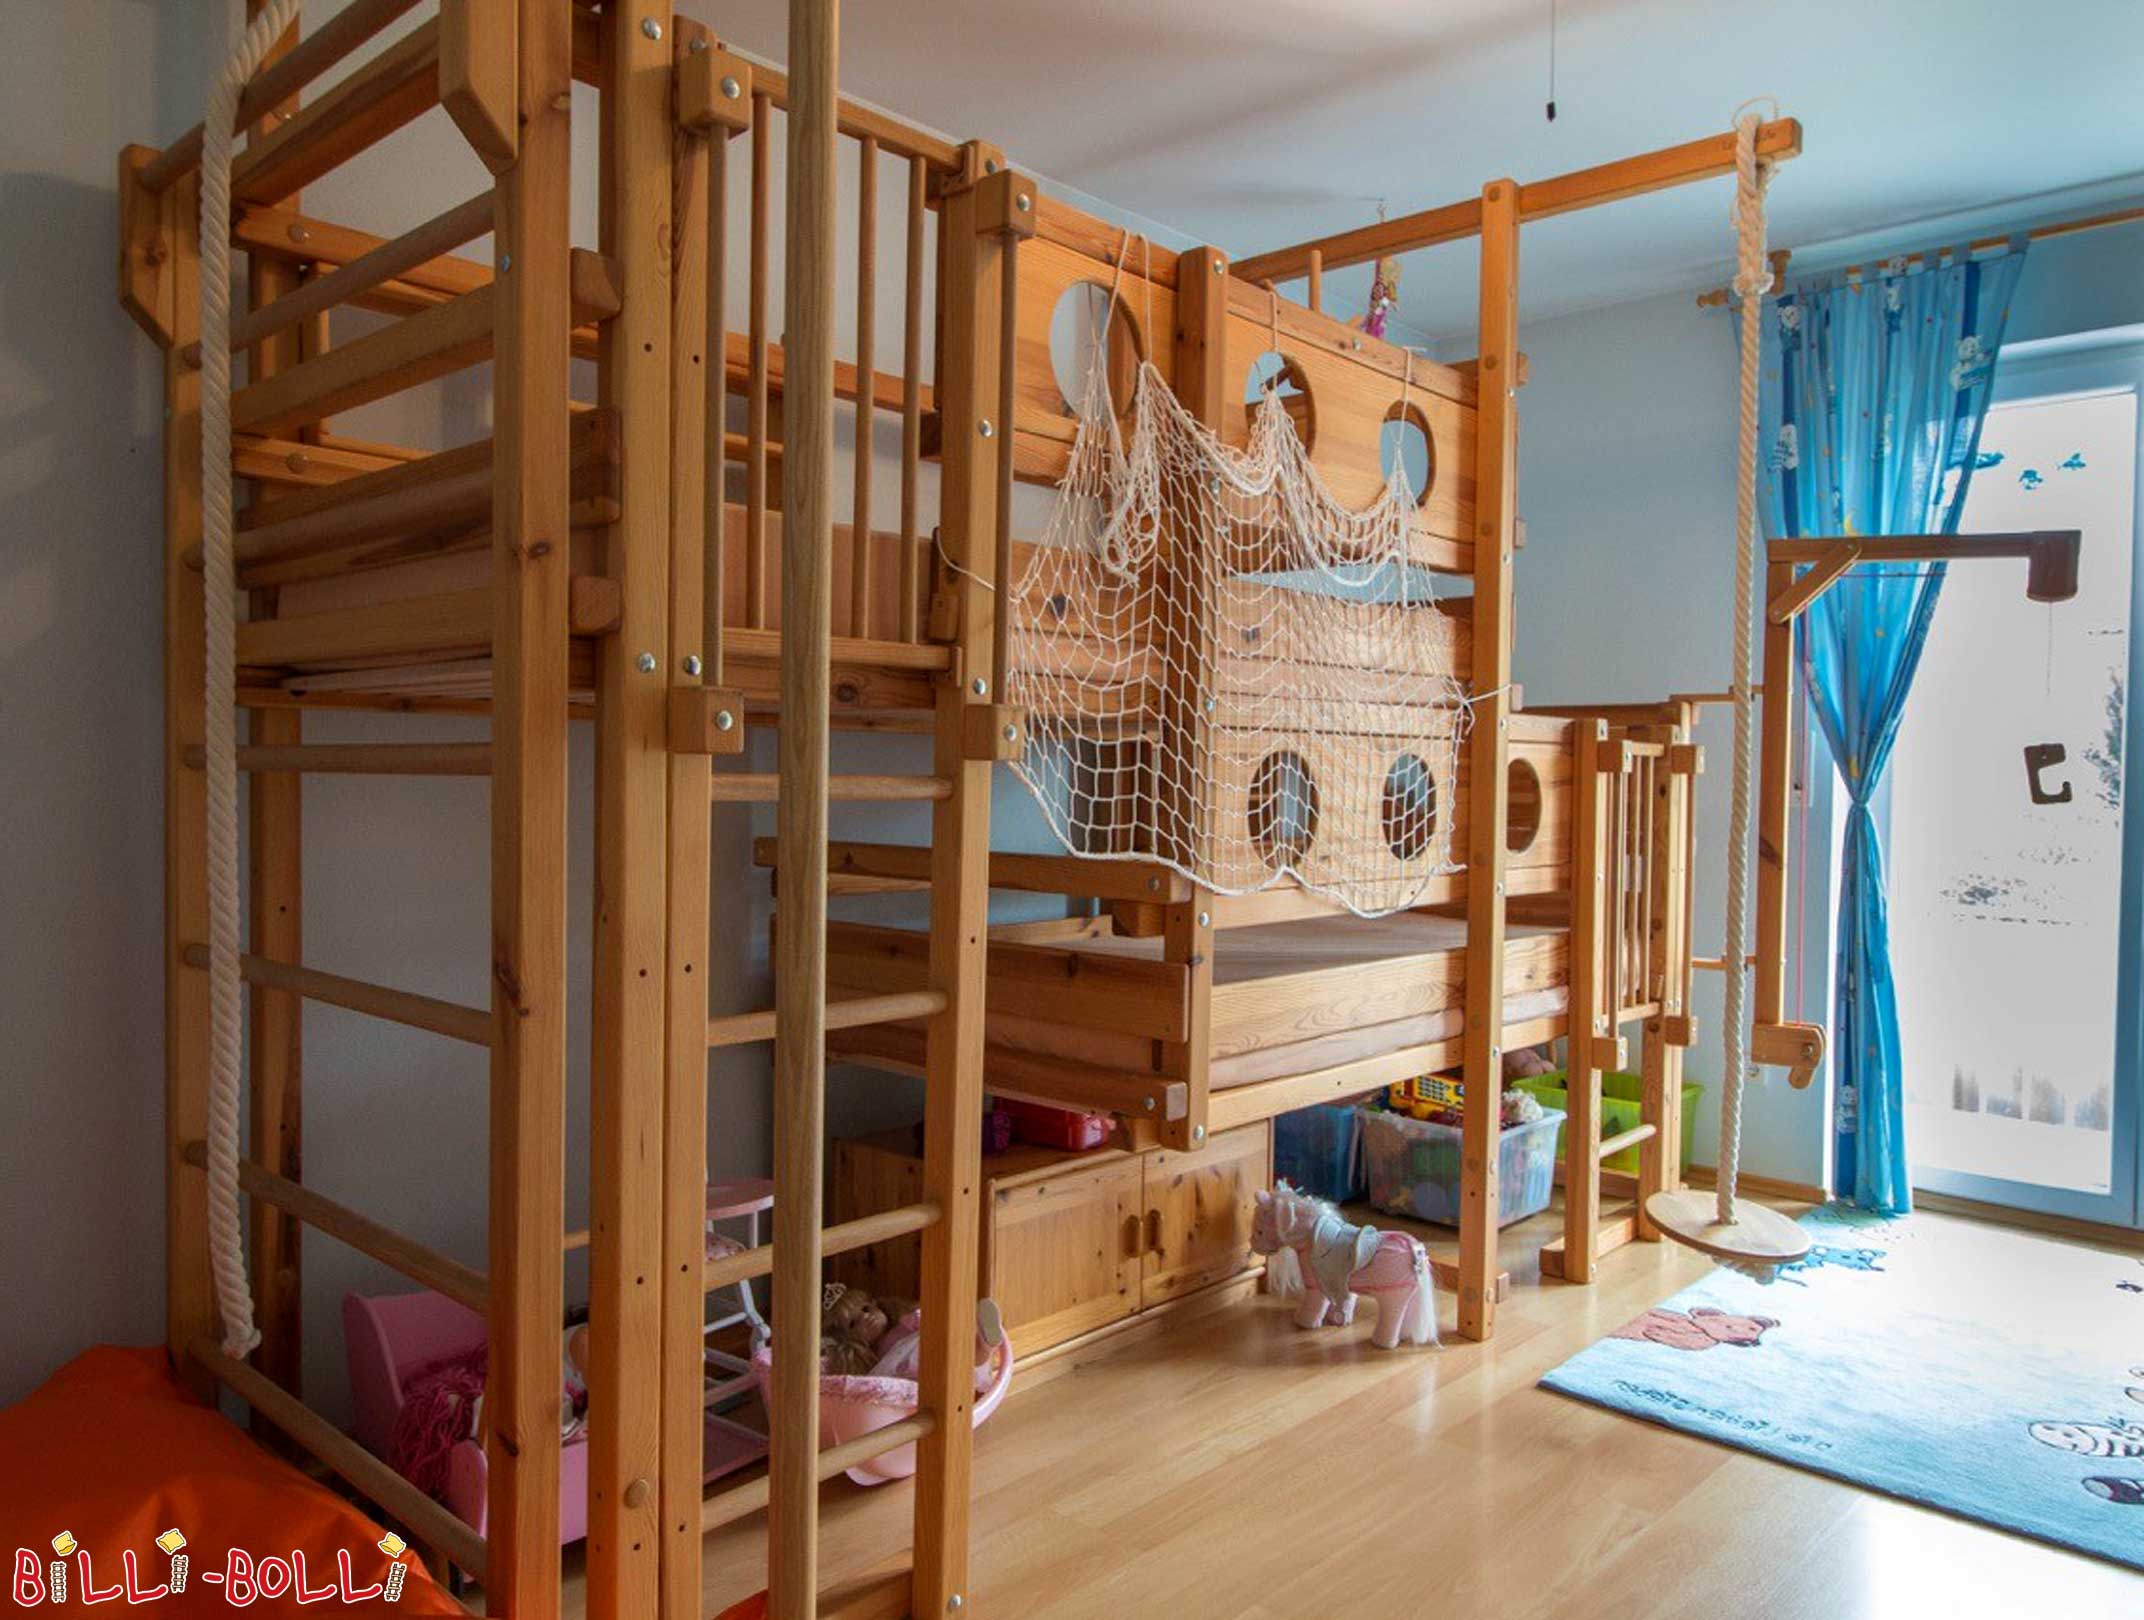 Camas dobles altas de madera: La litera doble superior es una litera doble para 2 niños (Literas ambas camas arriba)